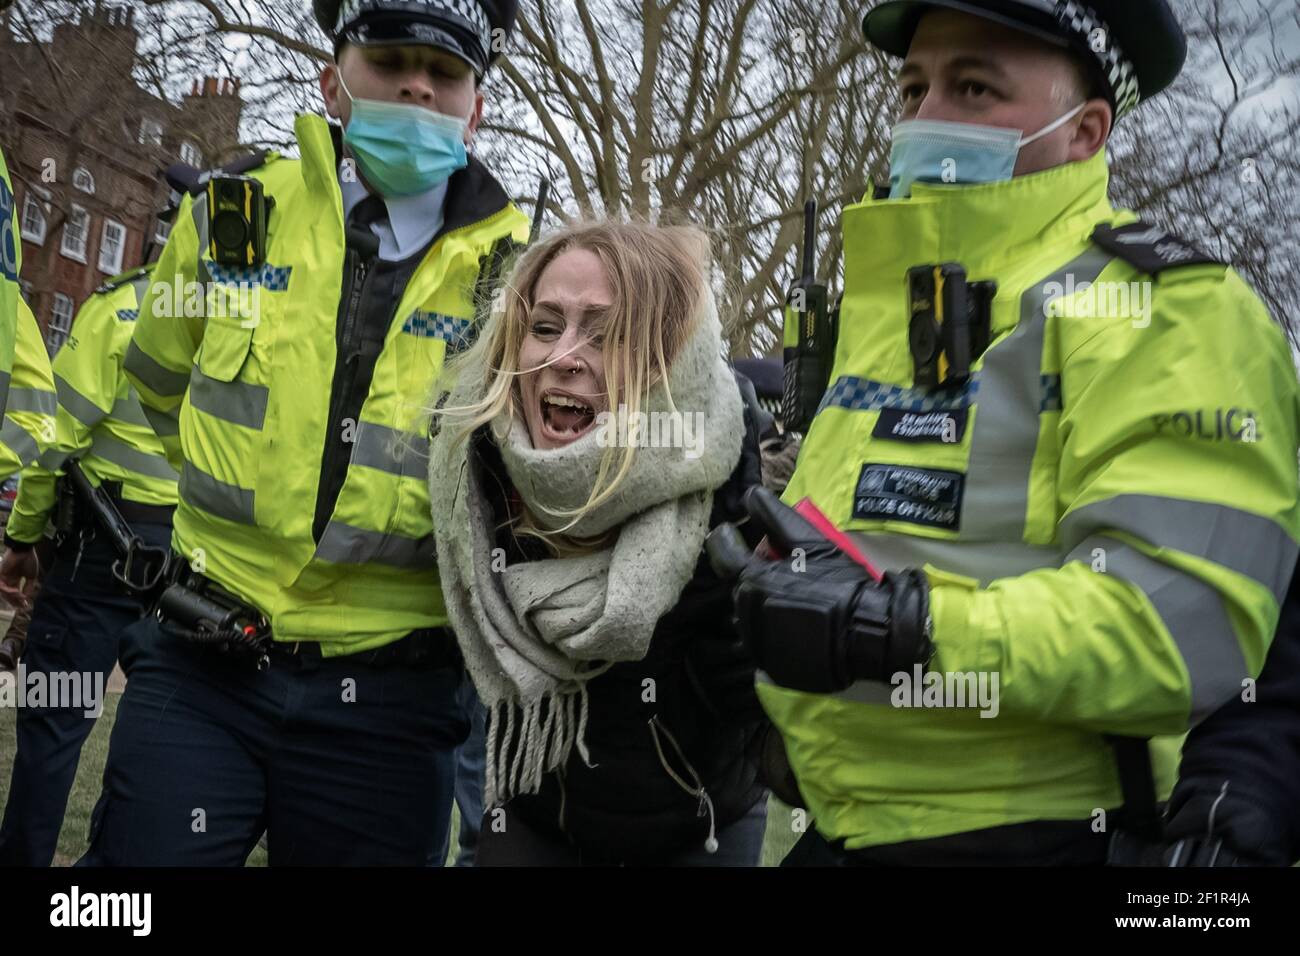 Coronavirus : la police se brise et procède à des arrestations au cours d'une tentative de confinement de 20-30 manifestants sur Richmond Green, dans le sud-est de Londres, au Royaume-Uni. Banque D'Images